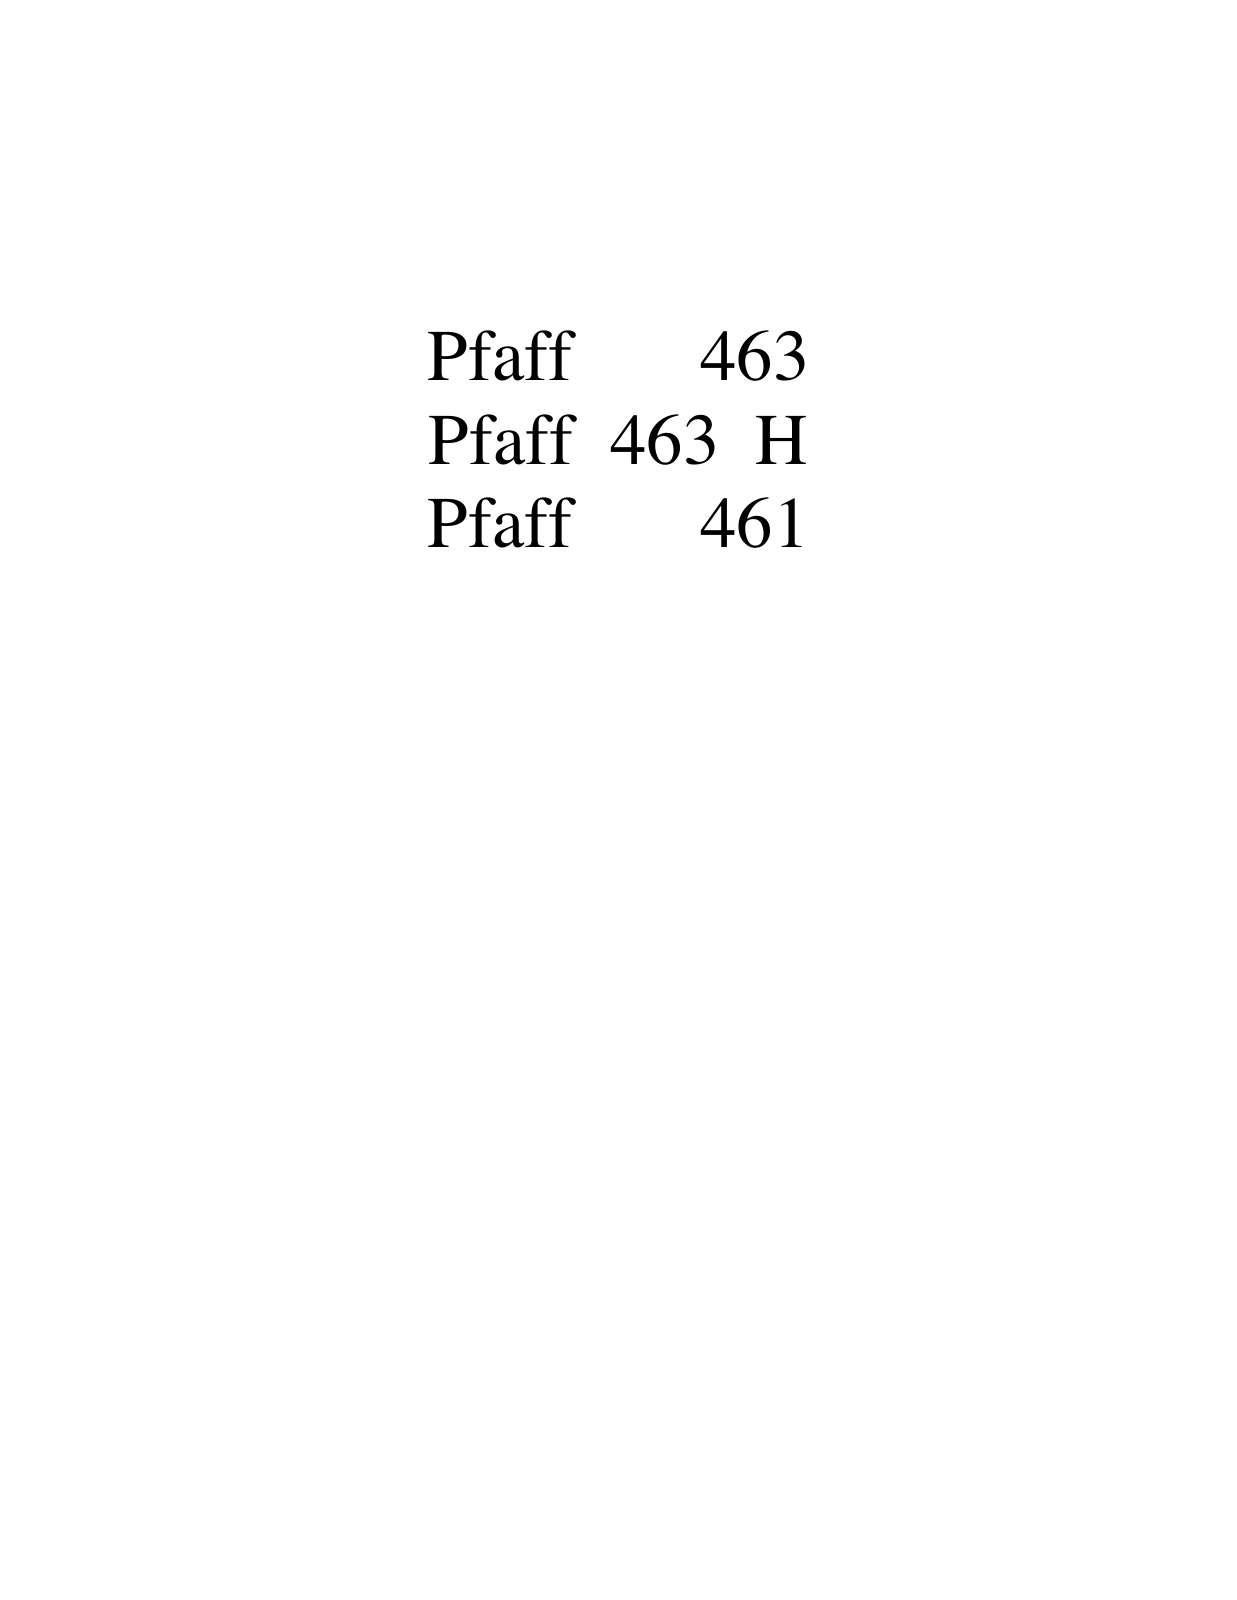 PFAFF 463, 463 H, 461 Parts List